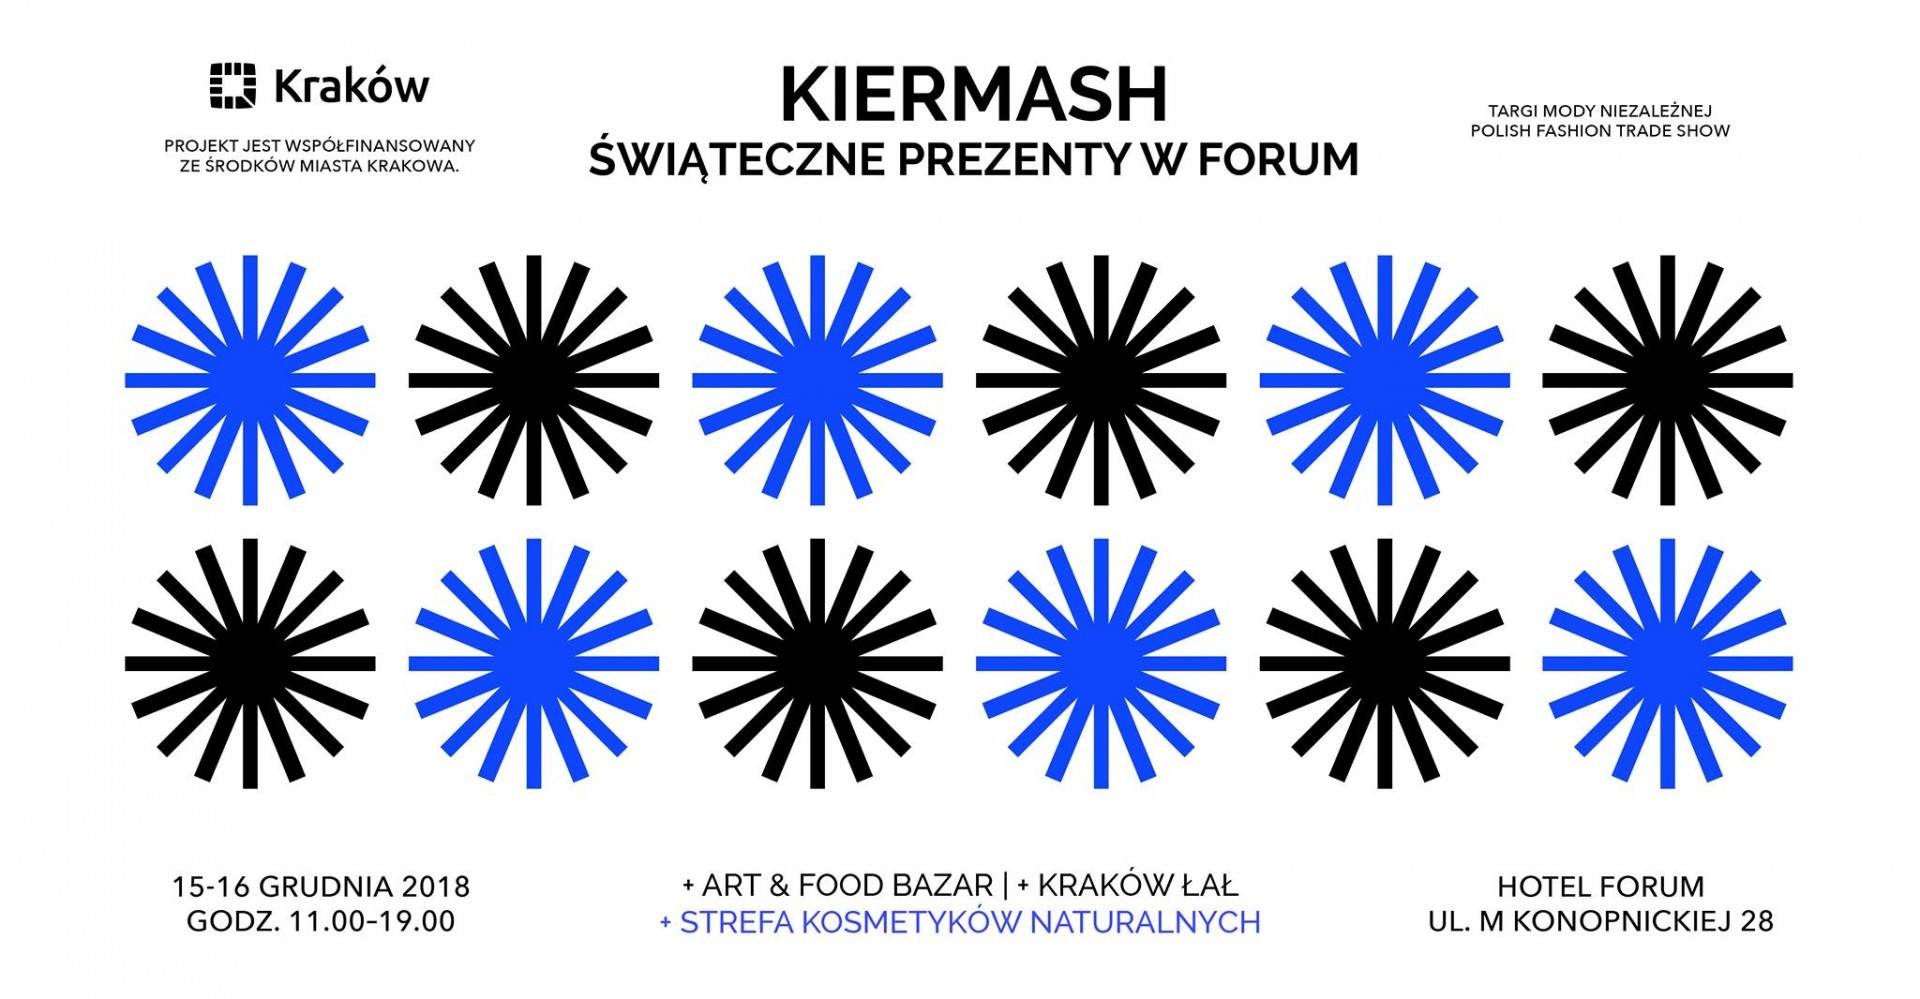 Kiermash - Świąteczne prezenty w Forum